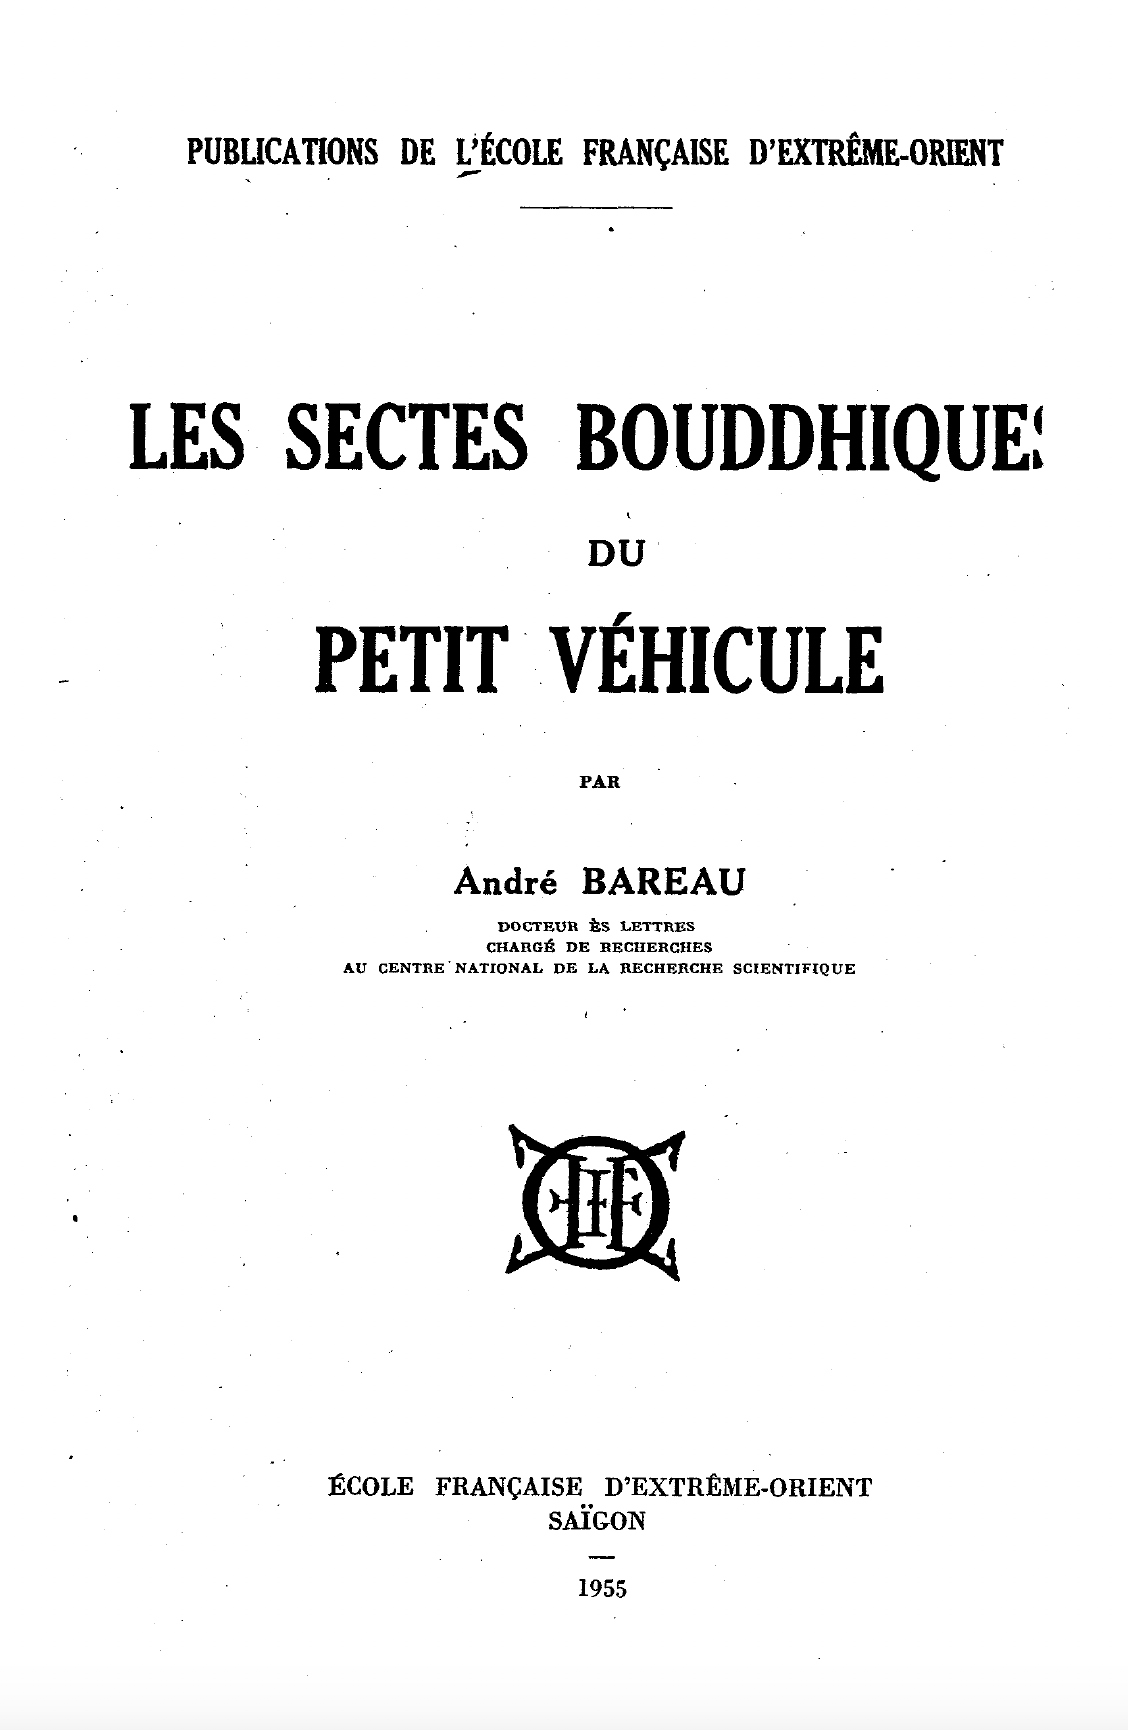 Les Sectes Bouddhiques du Petit Vehicule-front.jpg